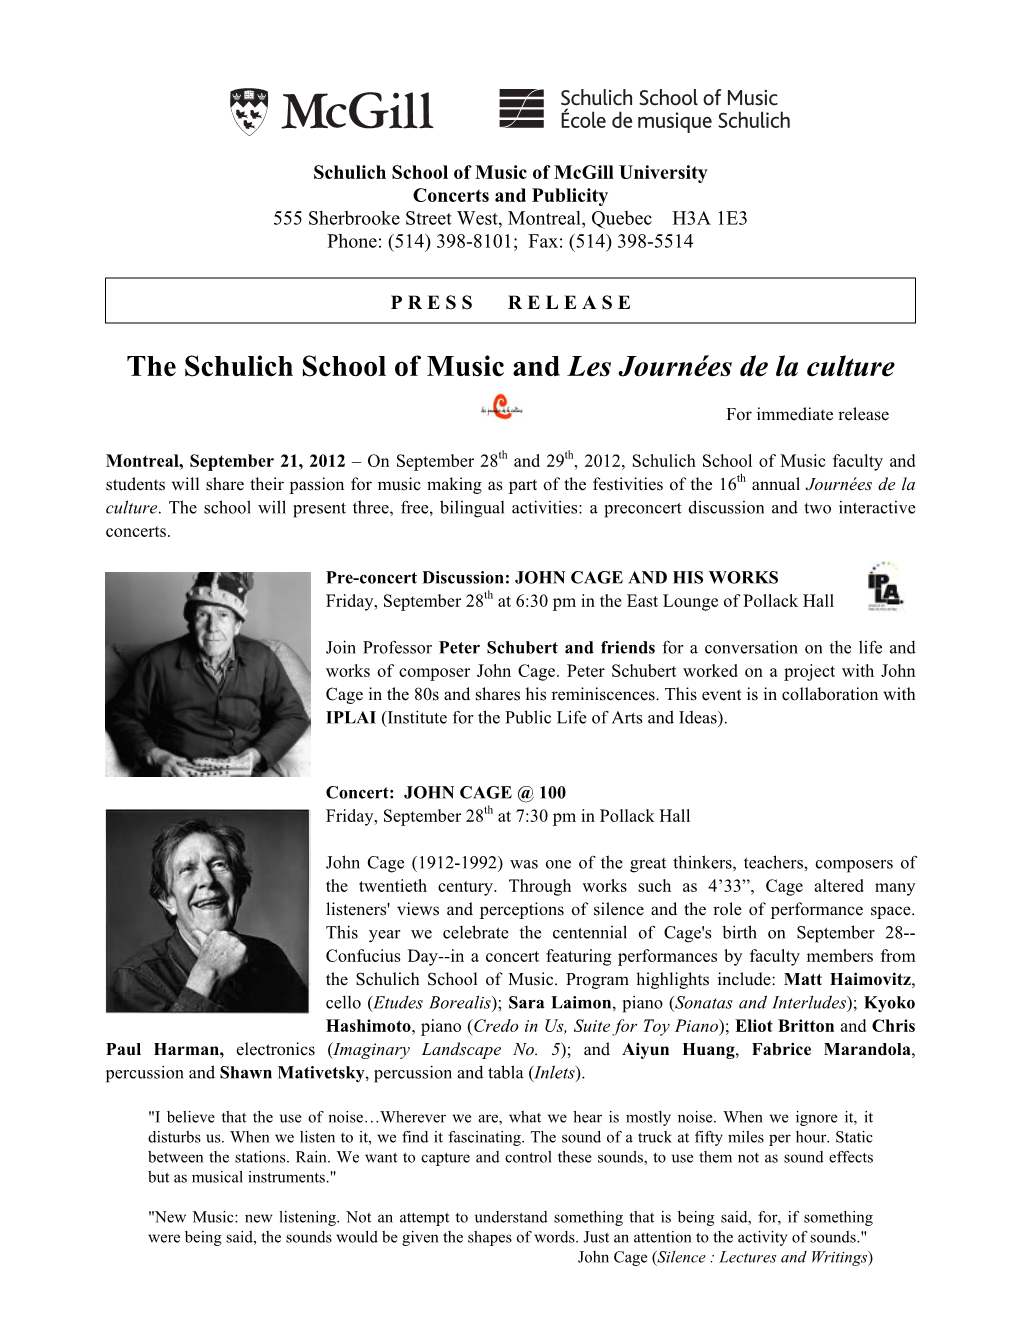 The Schulich School of Music and Les Journées De La Culture